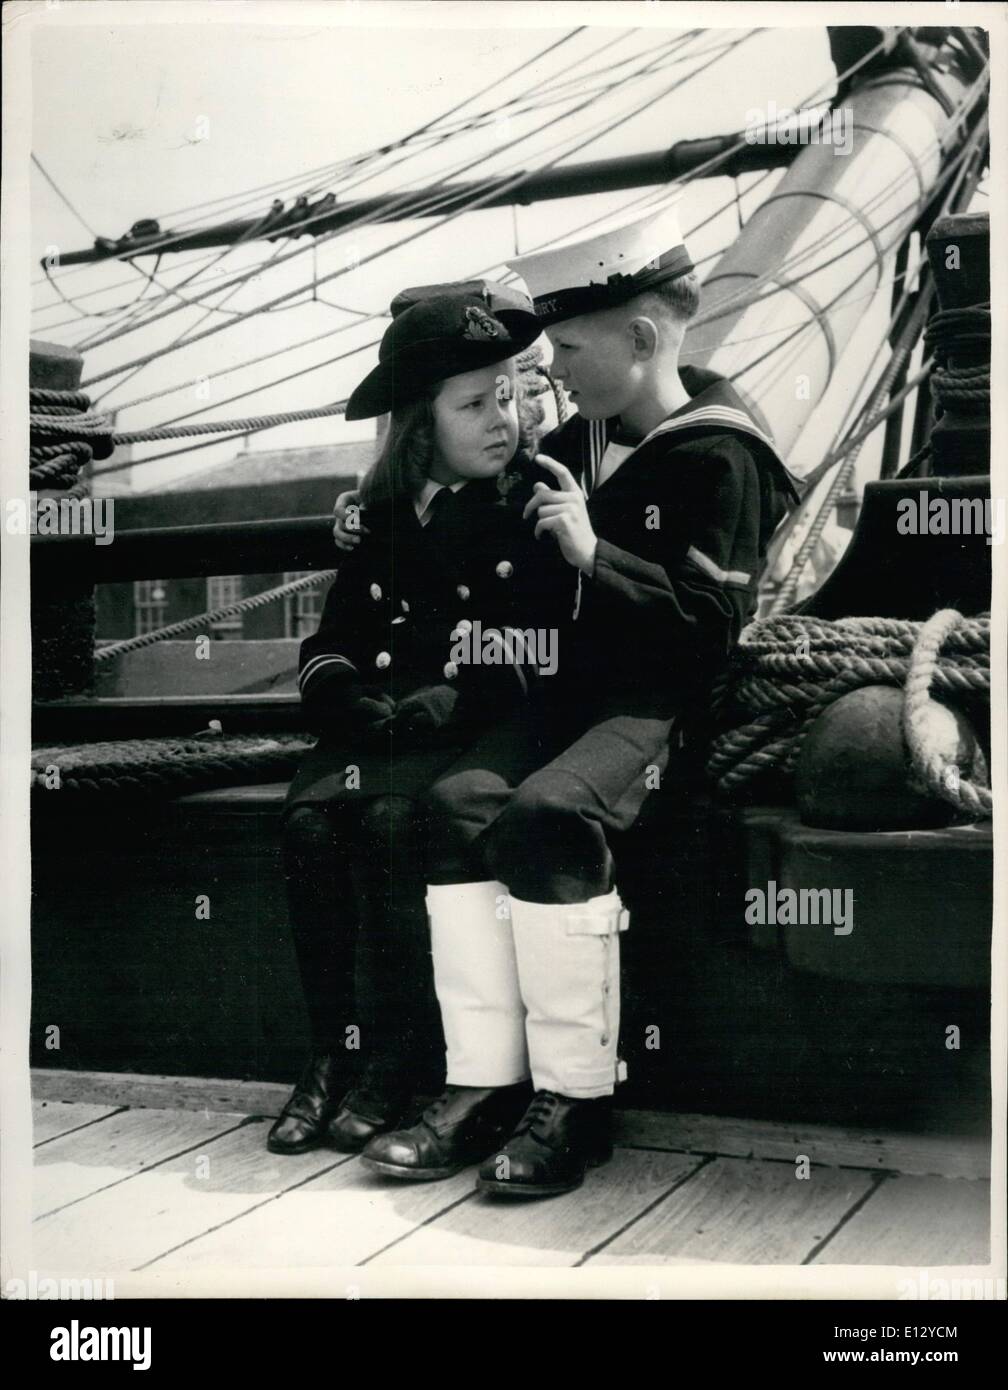 26. Februar 2012 - jüngste Offizier "der Marine die Königin besucht HMS Victory in Portsmouth. Der Geist von Nelson ist sehr lebendig in der Person des fünfjährigen Amanda Coppin von London. Sie laufen konnte seit Amanda der Marine und alles an ihr interessiert. Ihre Mutter machte eine kleine Nachbildung des ein W.R.N.S. Offizier Uniform, die das kleine Mädchen liebt zu tragen. Als besonderes Schmankerl wurde Amanda nach Portsmouth gebracht wo sie über die berühmte H.M.S eskortiert wurde Stockfoto